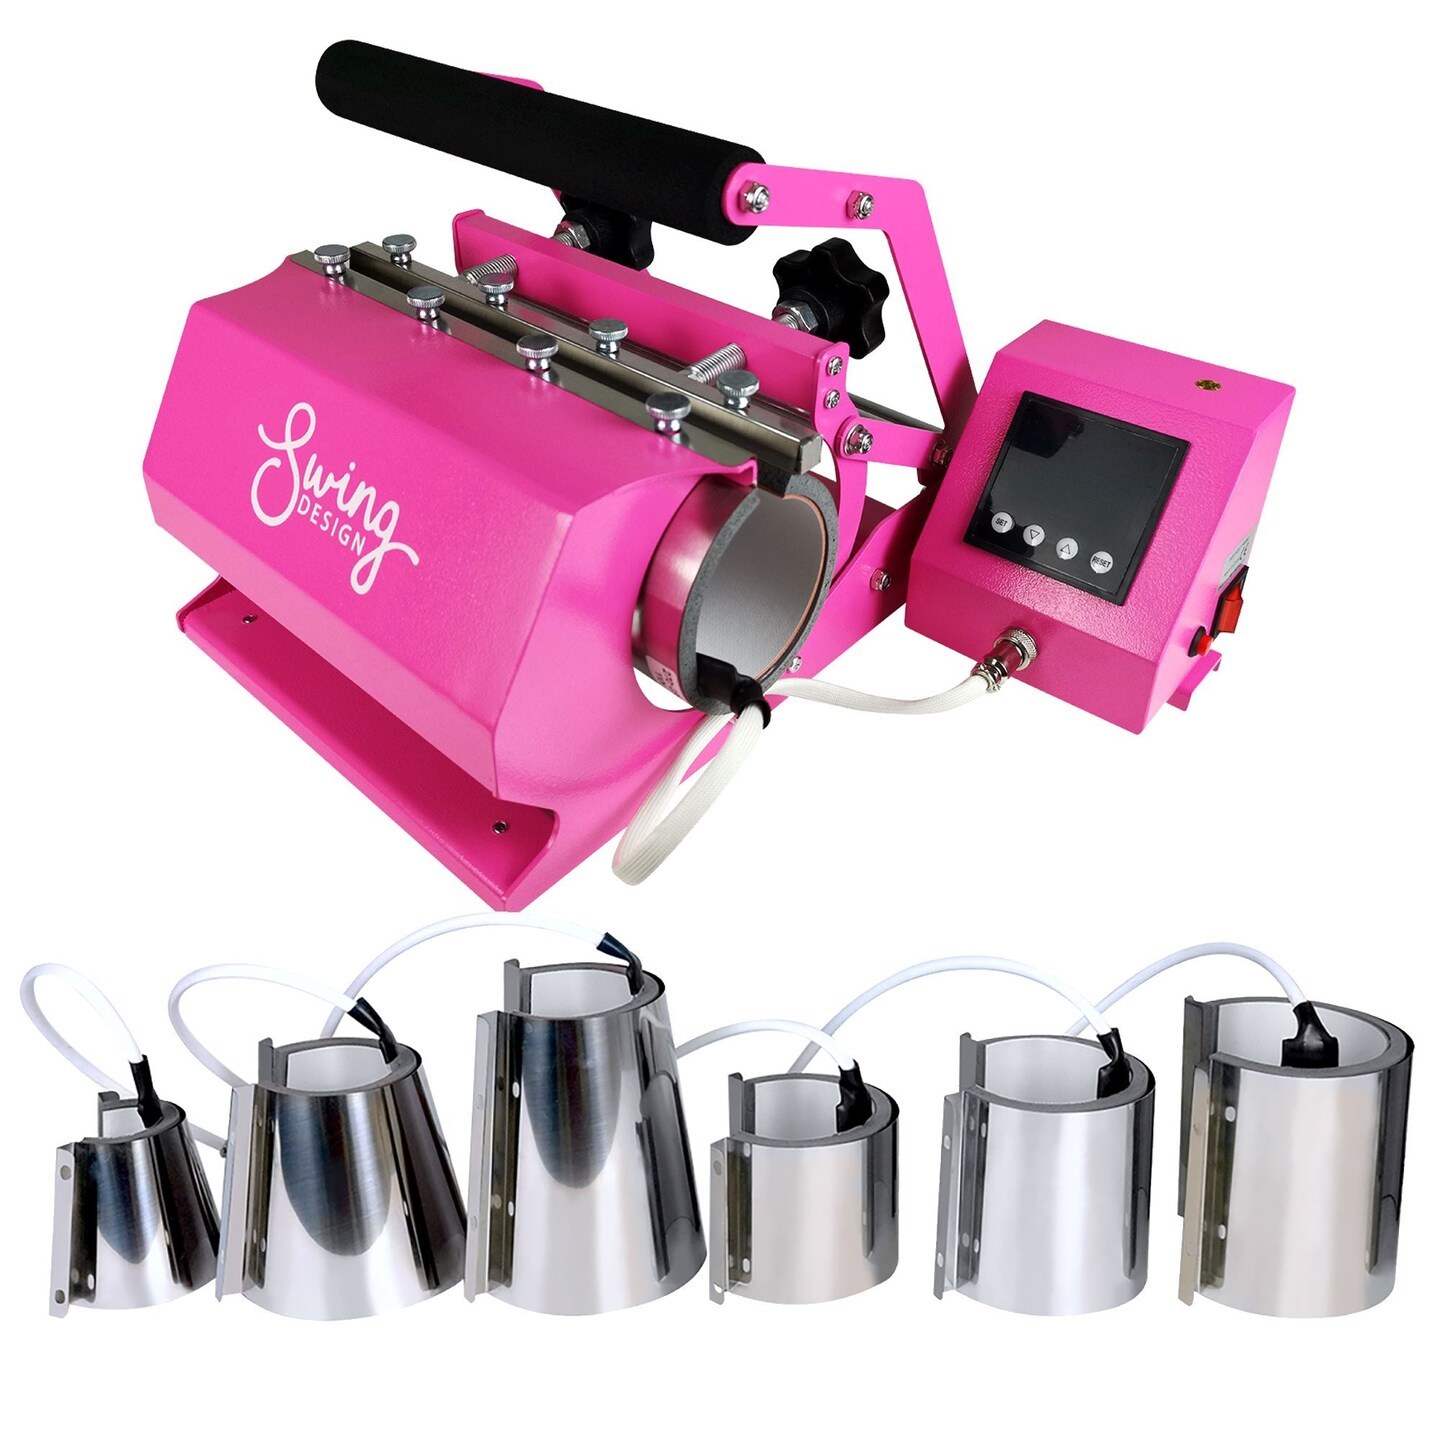 Swing Design 4-in-1 Mug, Cup, & Bottle Heat Press - Pink